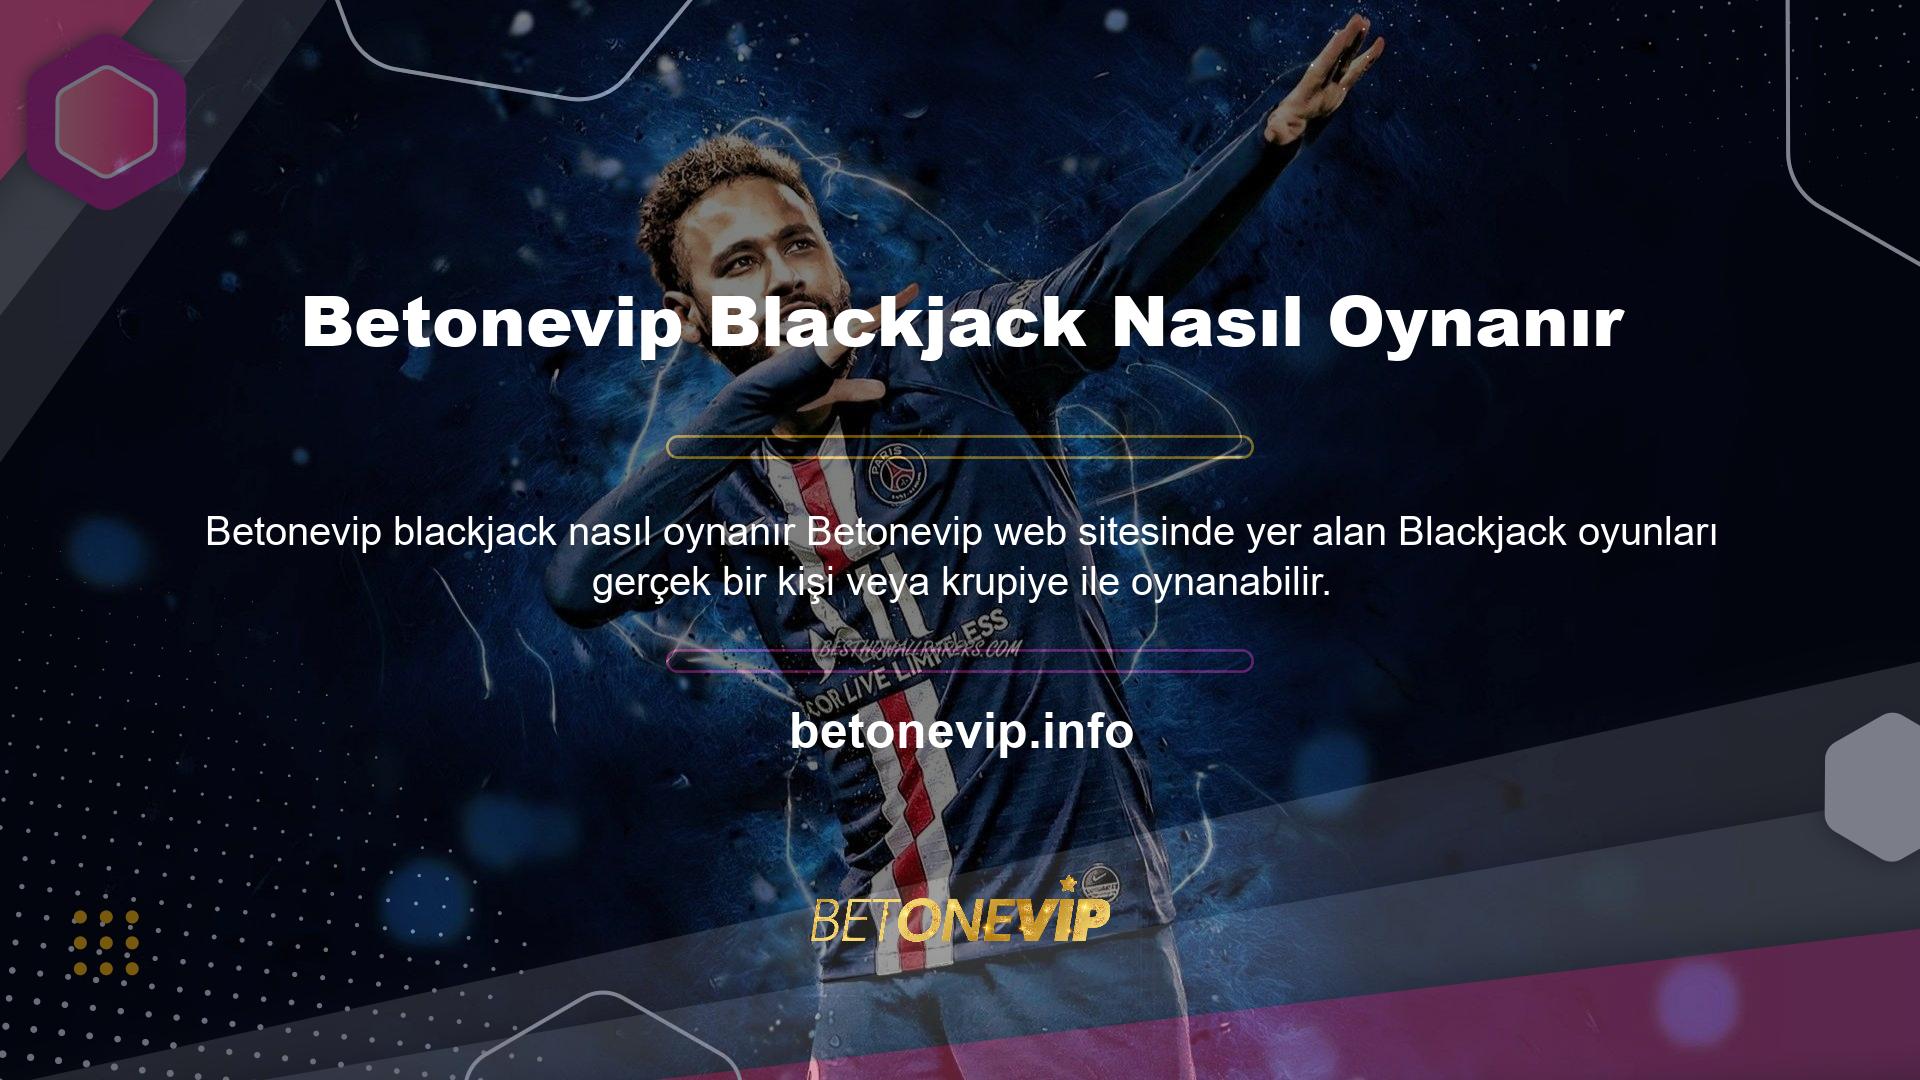 Sitede yer alan Betonevip blackjack casino platformuna katılmak için öncelikle üyelik işlemini tamamlamanız gerekmektedir